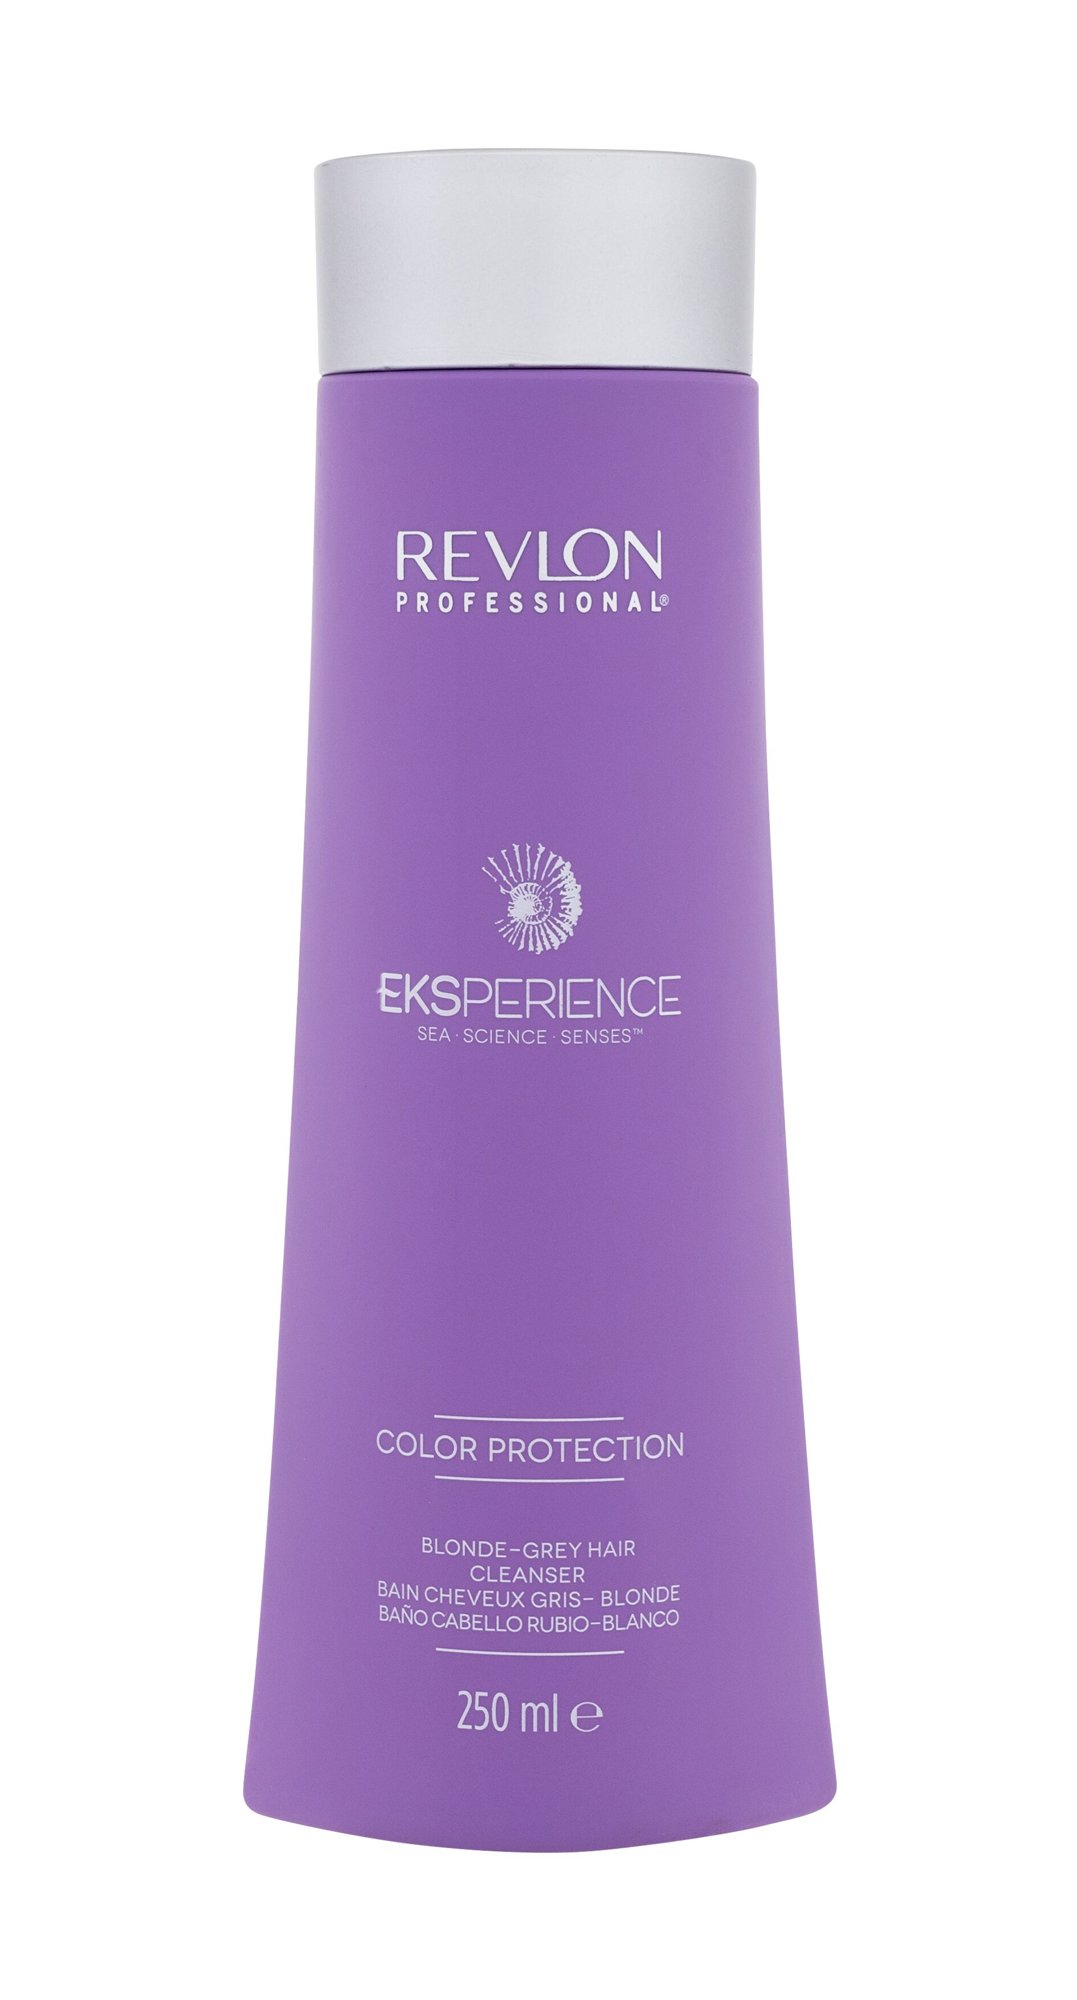 Revlon Professional Eksperience Color Protection Blonde & Grey Hair Cleanser šampūnas